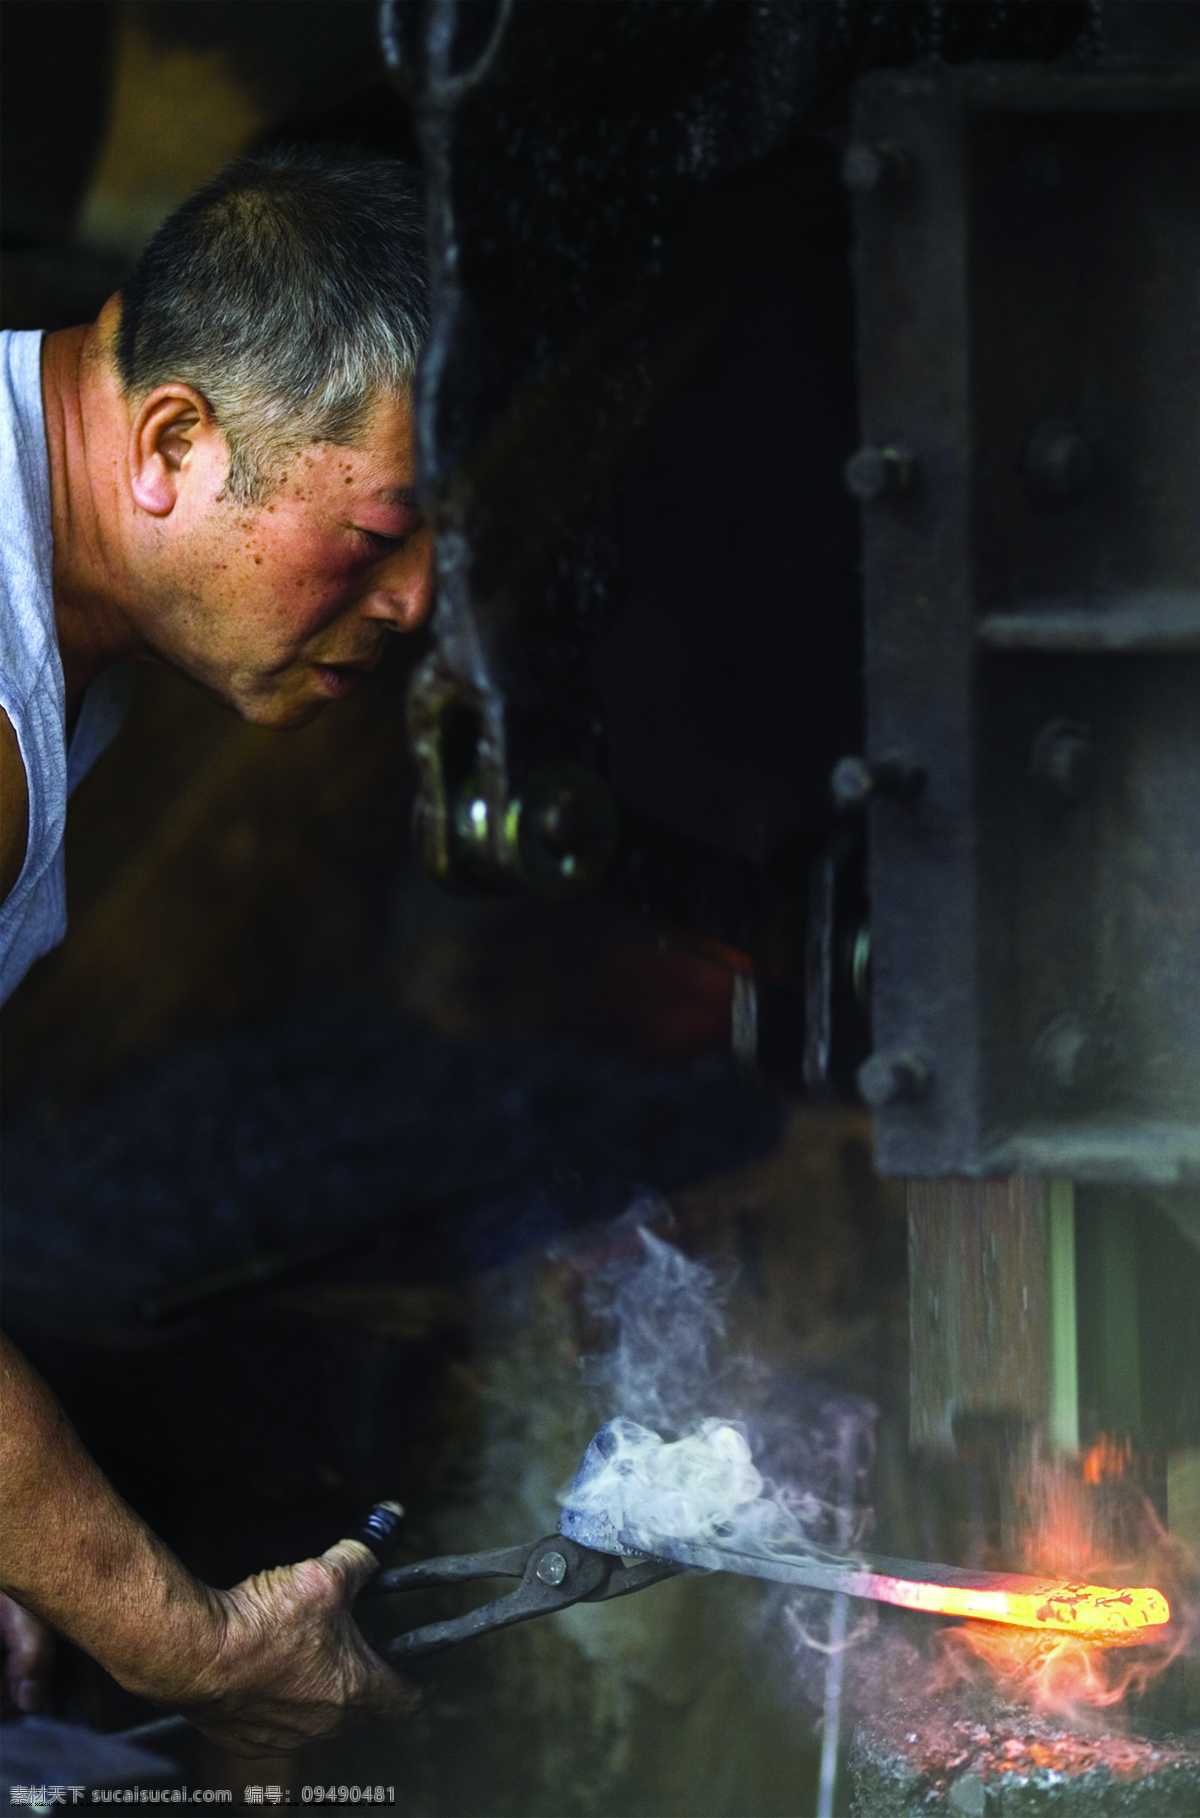 铁匠 铁匠工人 打铁 熔浆 日常生活 人物图库